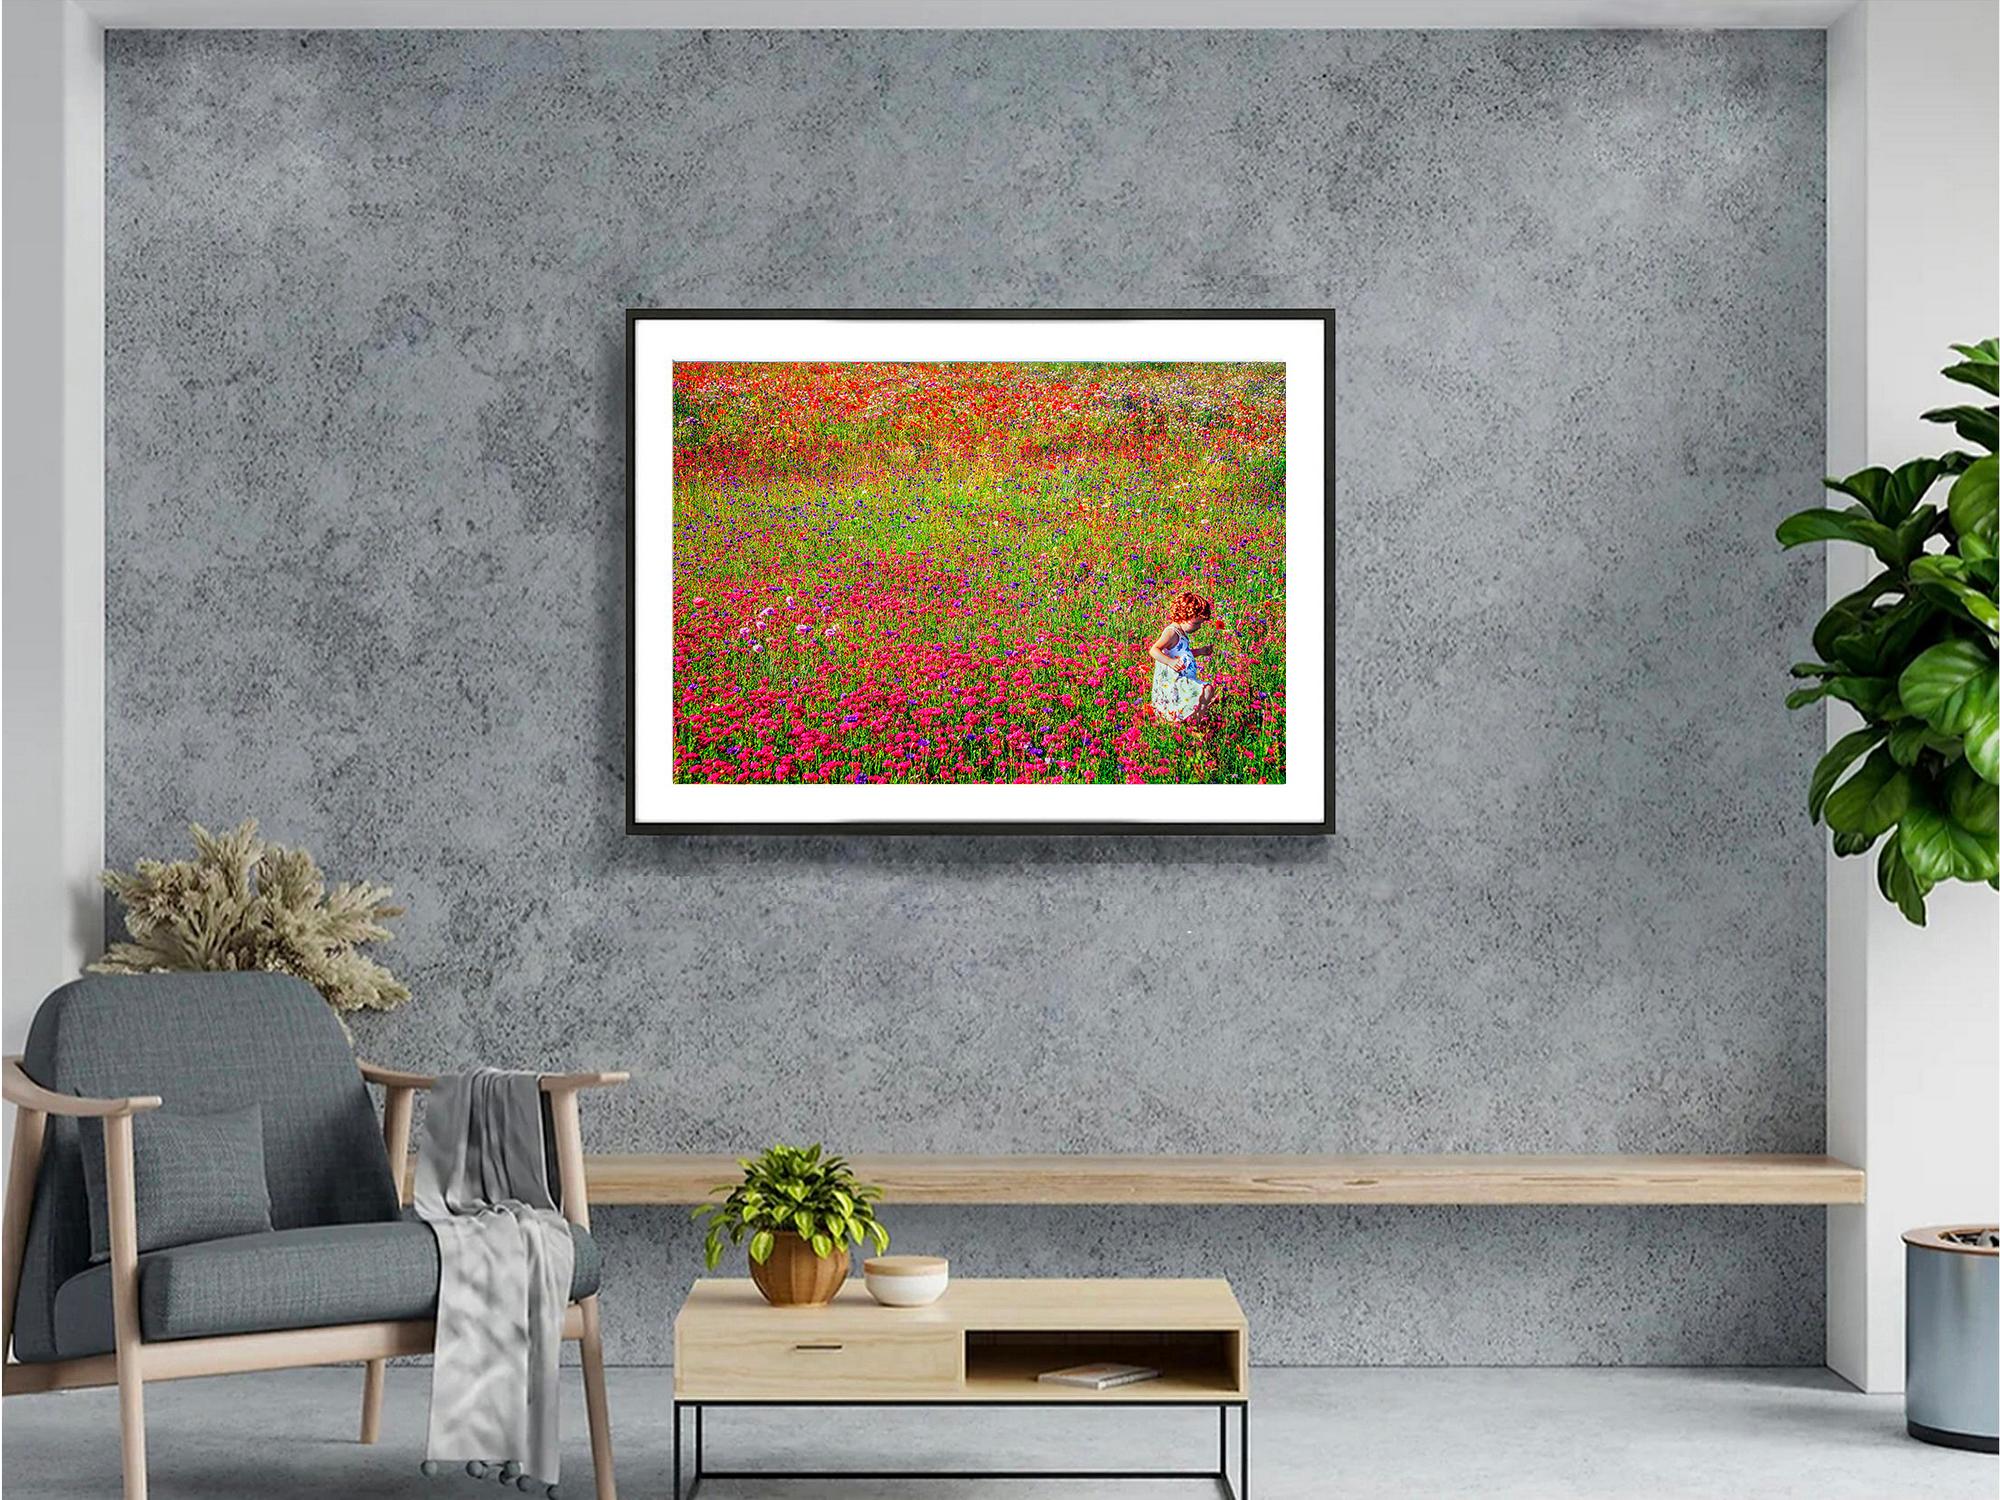  Durch die Linse von Mitchell Funk verwandelt sich ein blühendes Blumenfeld in ein postimpressionistisches Gemälde im Stile Monets. Ein einsames rothaariges Kind unterstreicht die Komposition, während es durch die blühenden Blumen tänzelt. Die